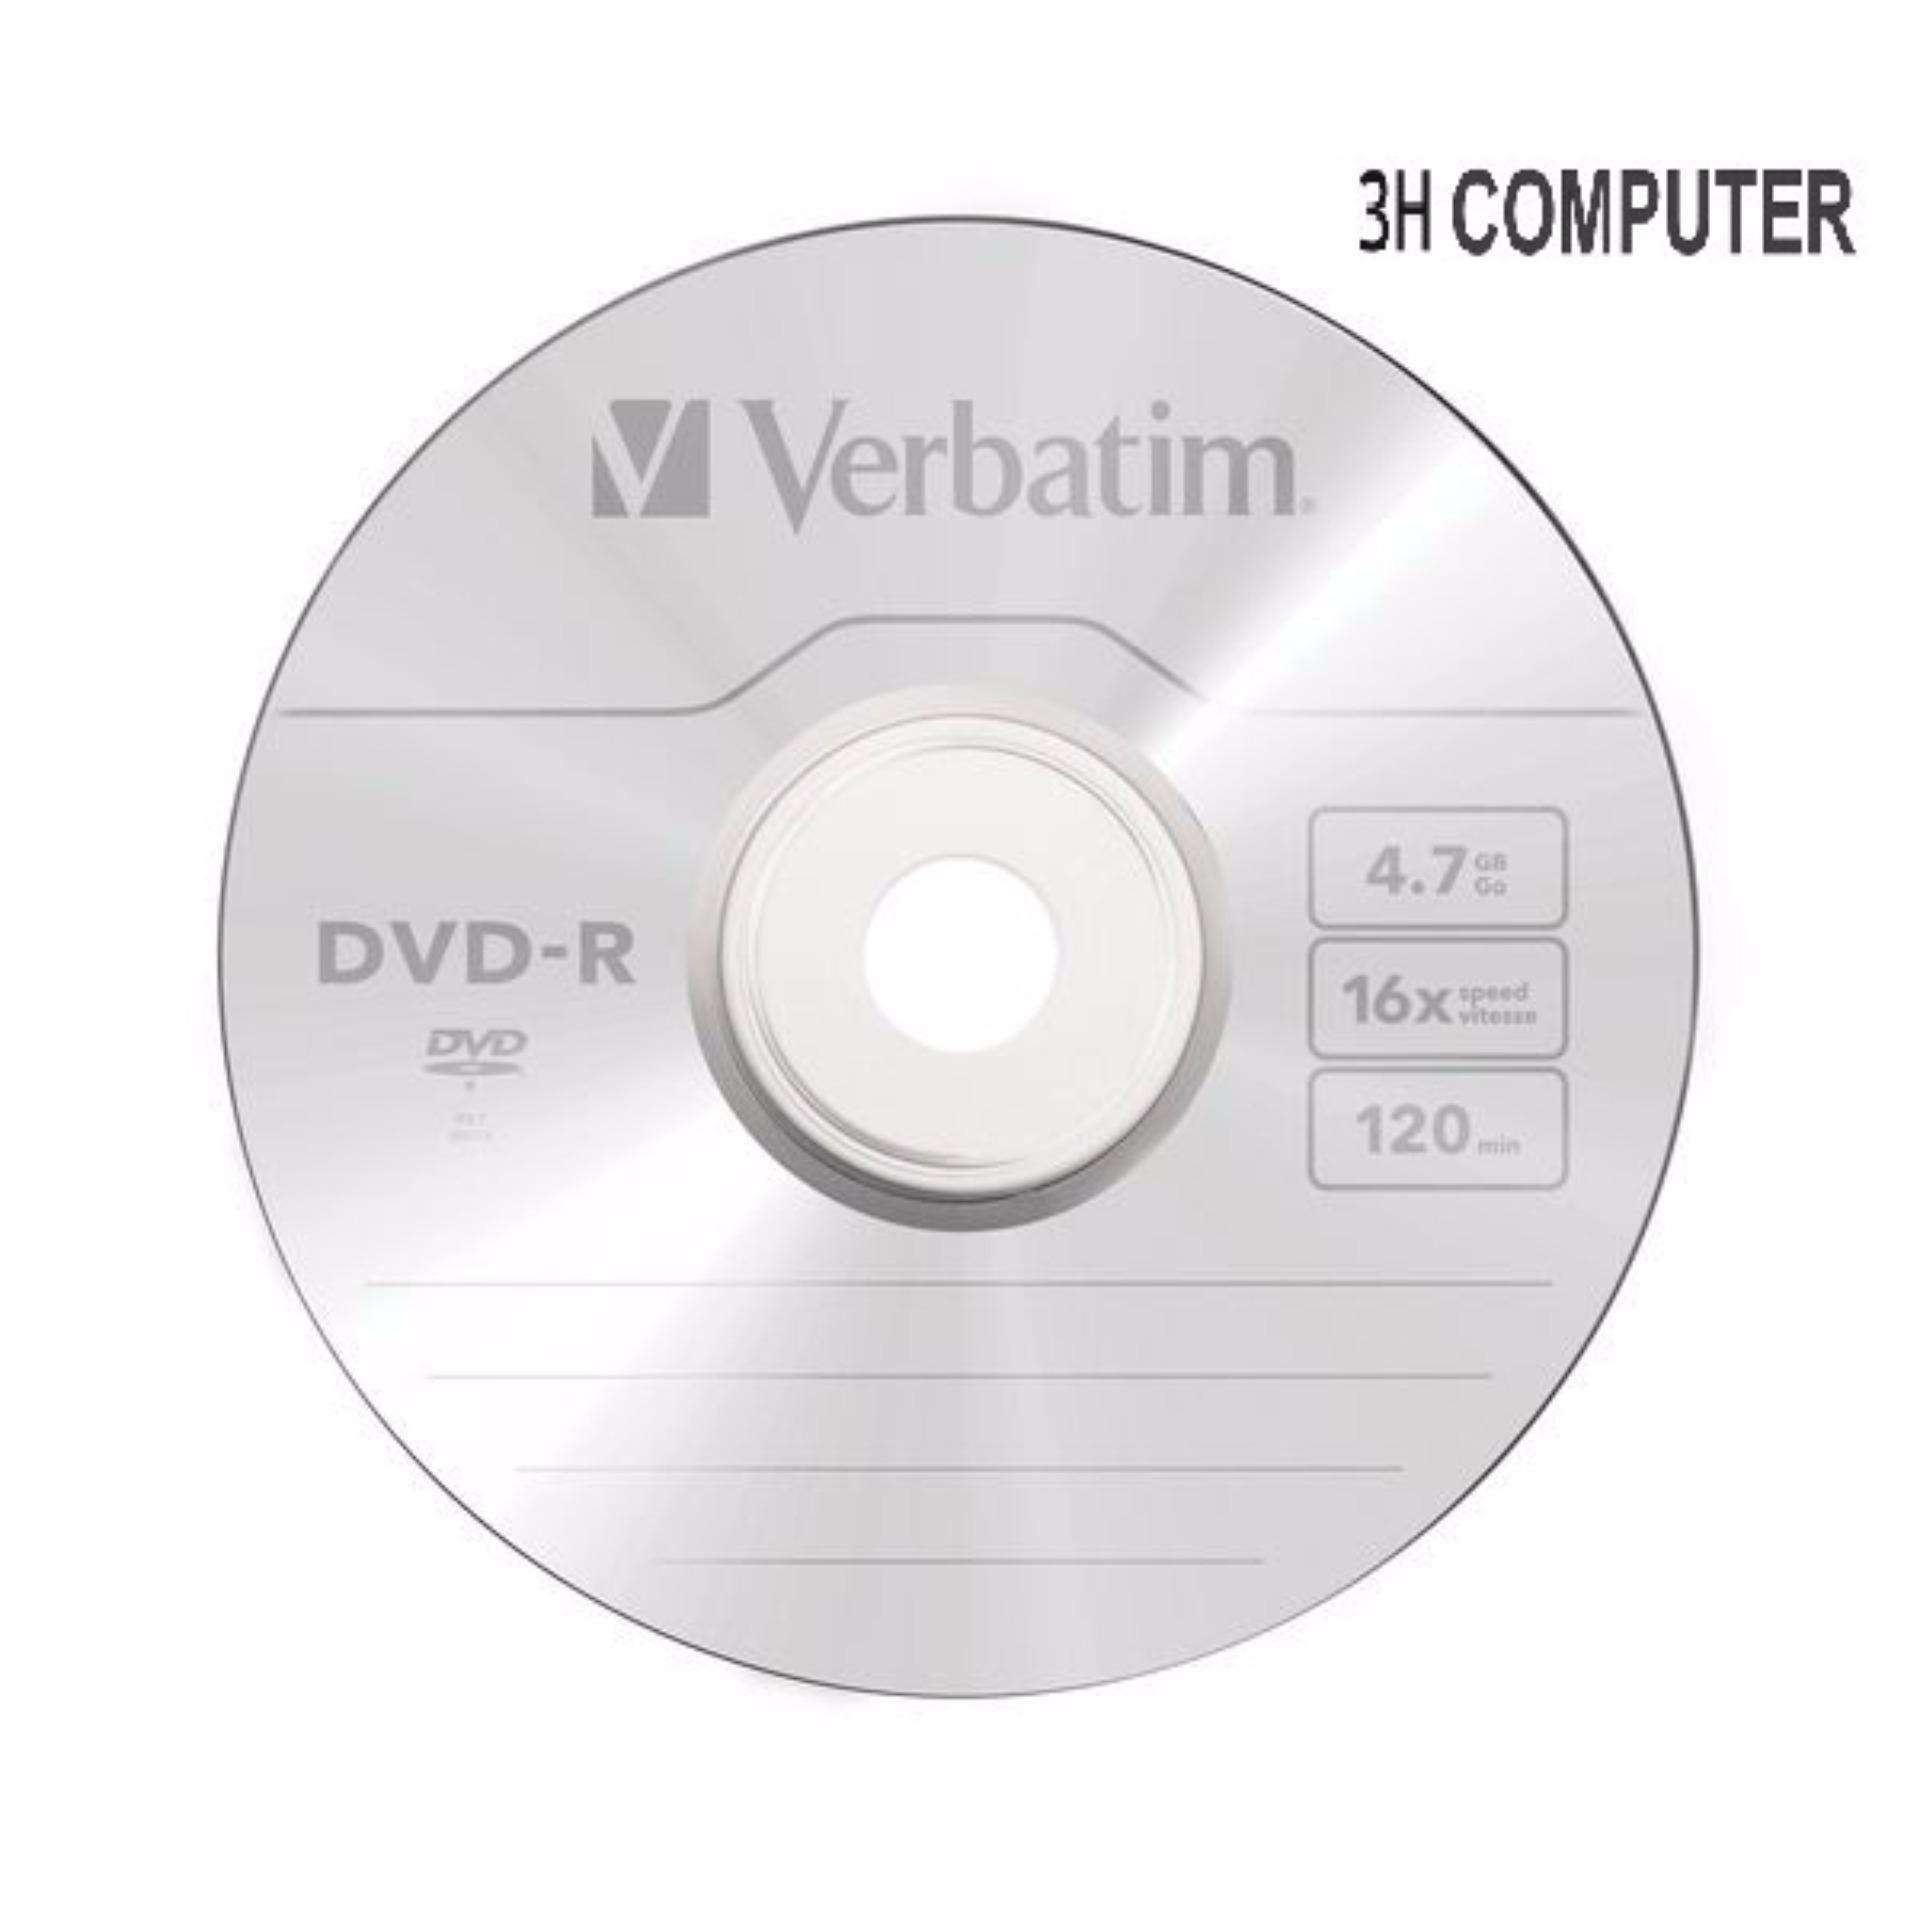 Bộ 25 đĩa trắng DVD VERBATIM 4.7G tặng cây bút ghi đĩa